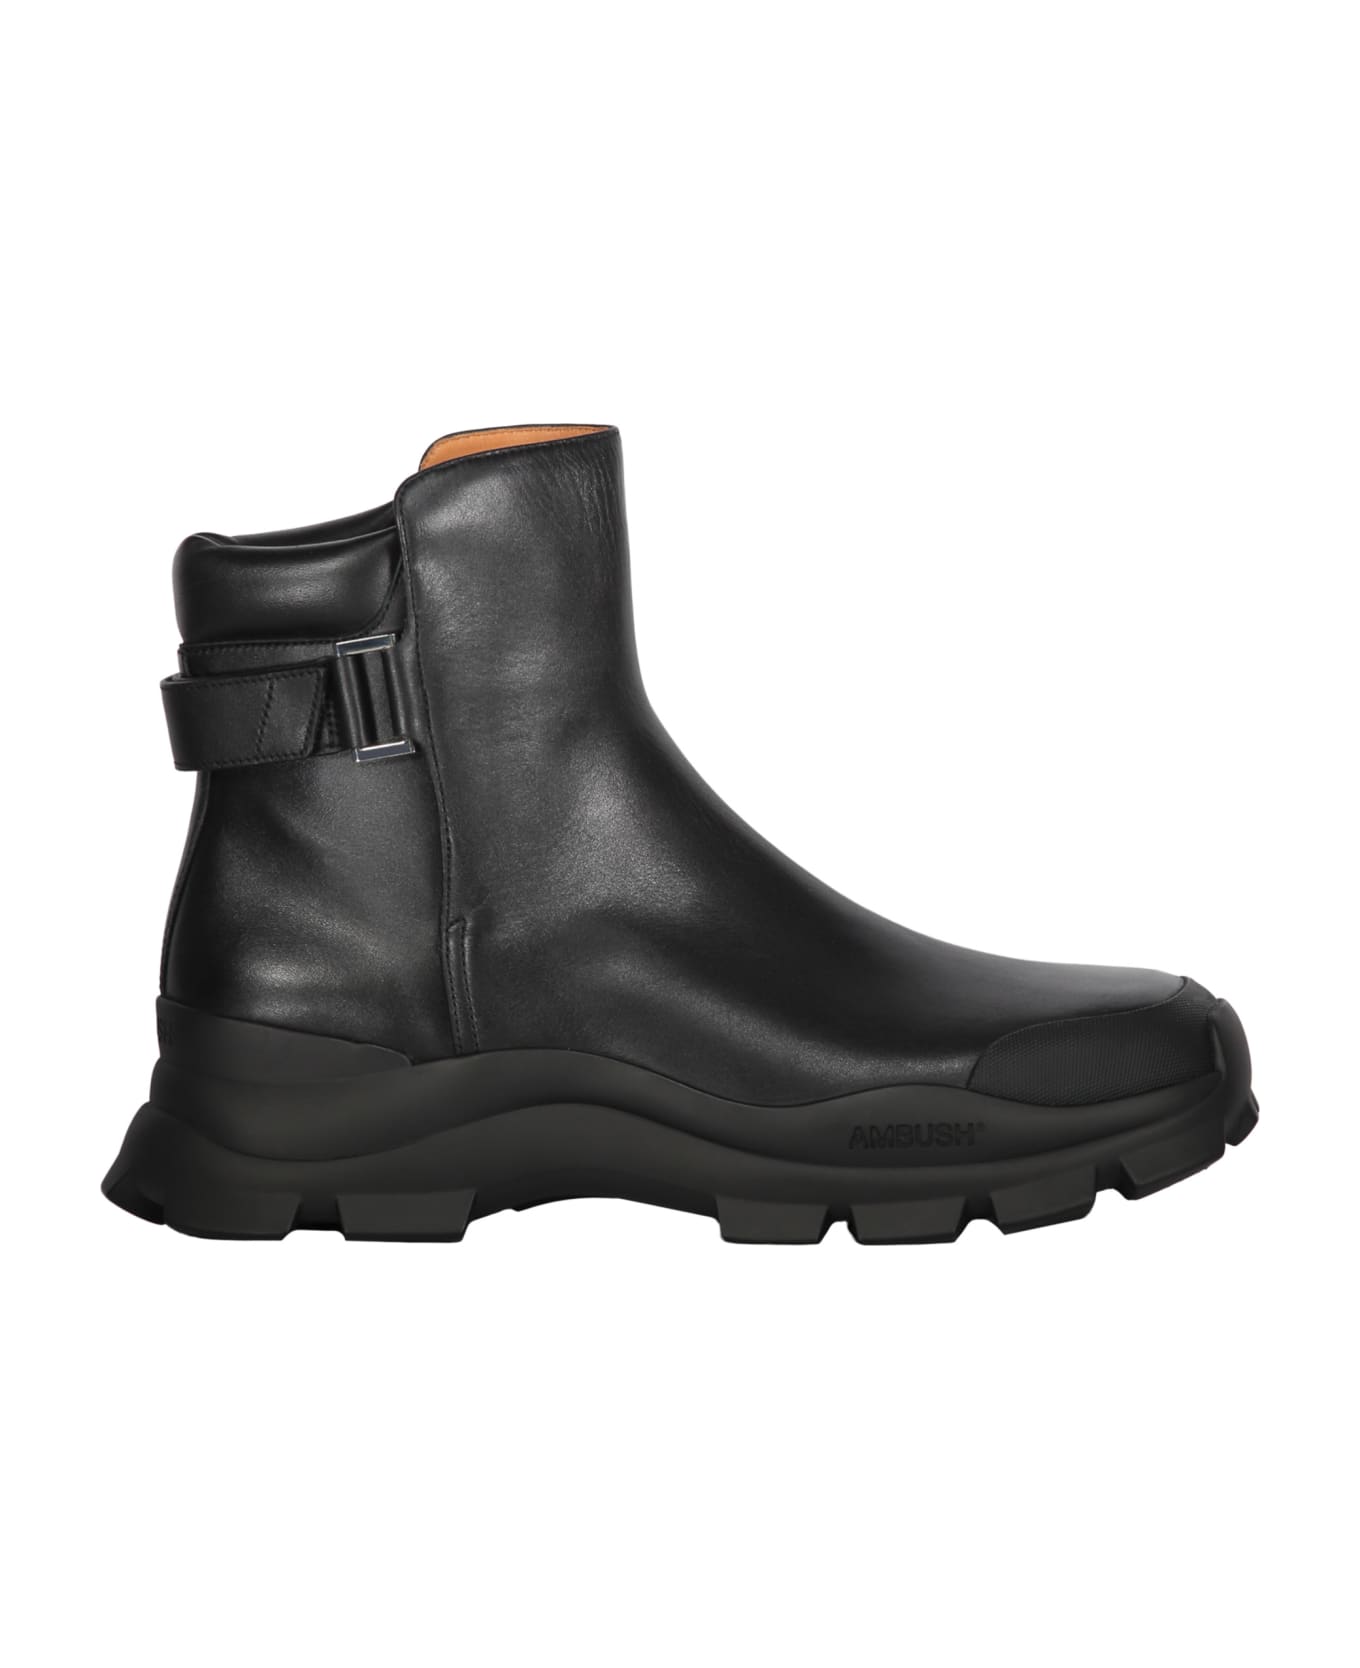 AMBUSH Leather Boots - black ブーツ